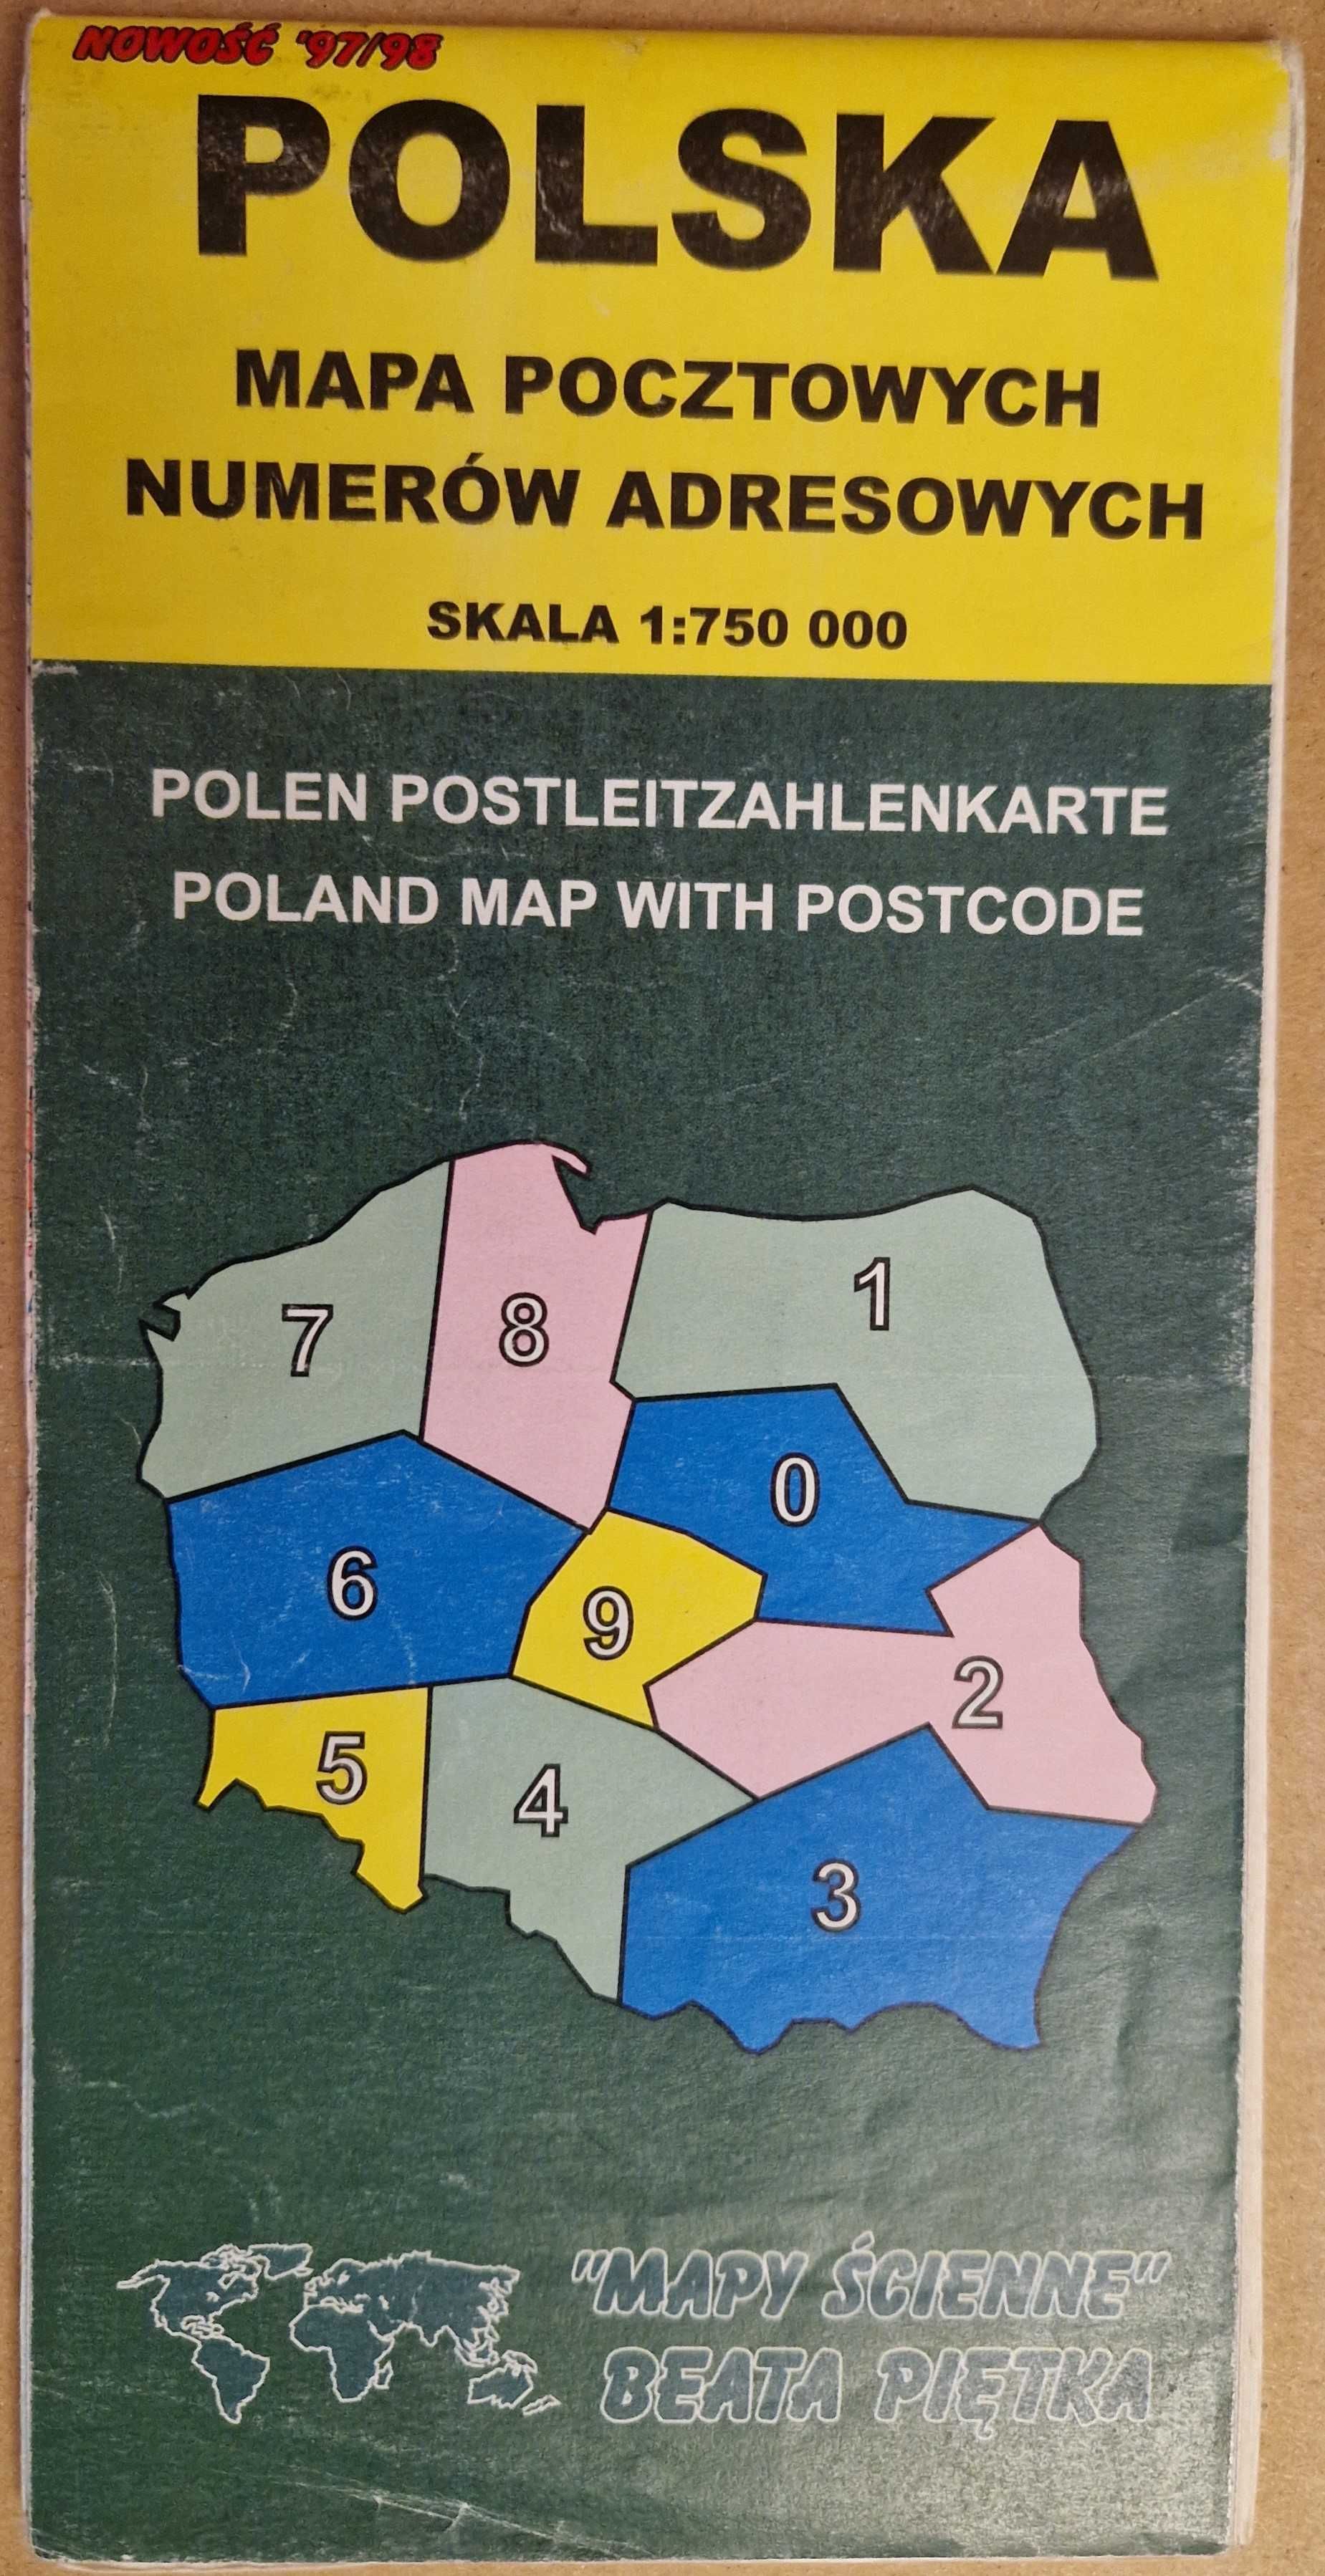 Polska Mapa pocztowych numerów adresowych 1:750 000